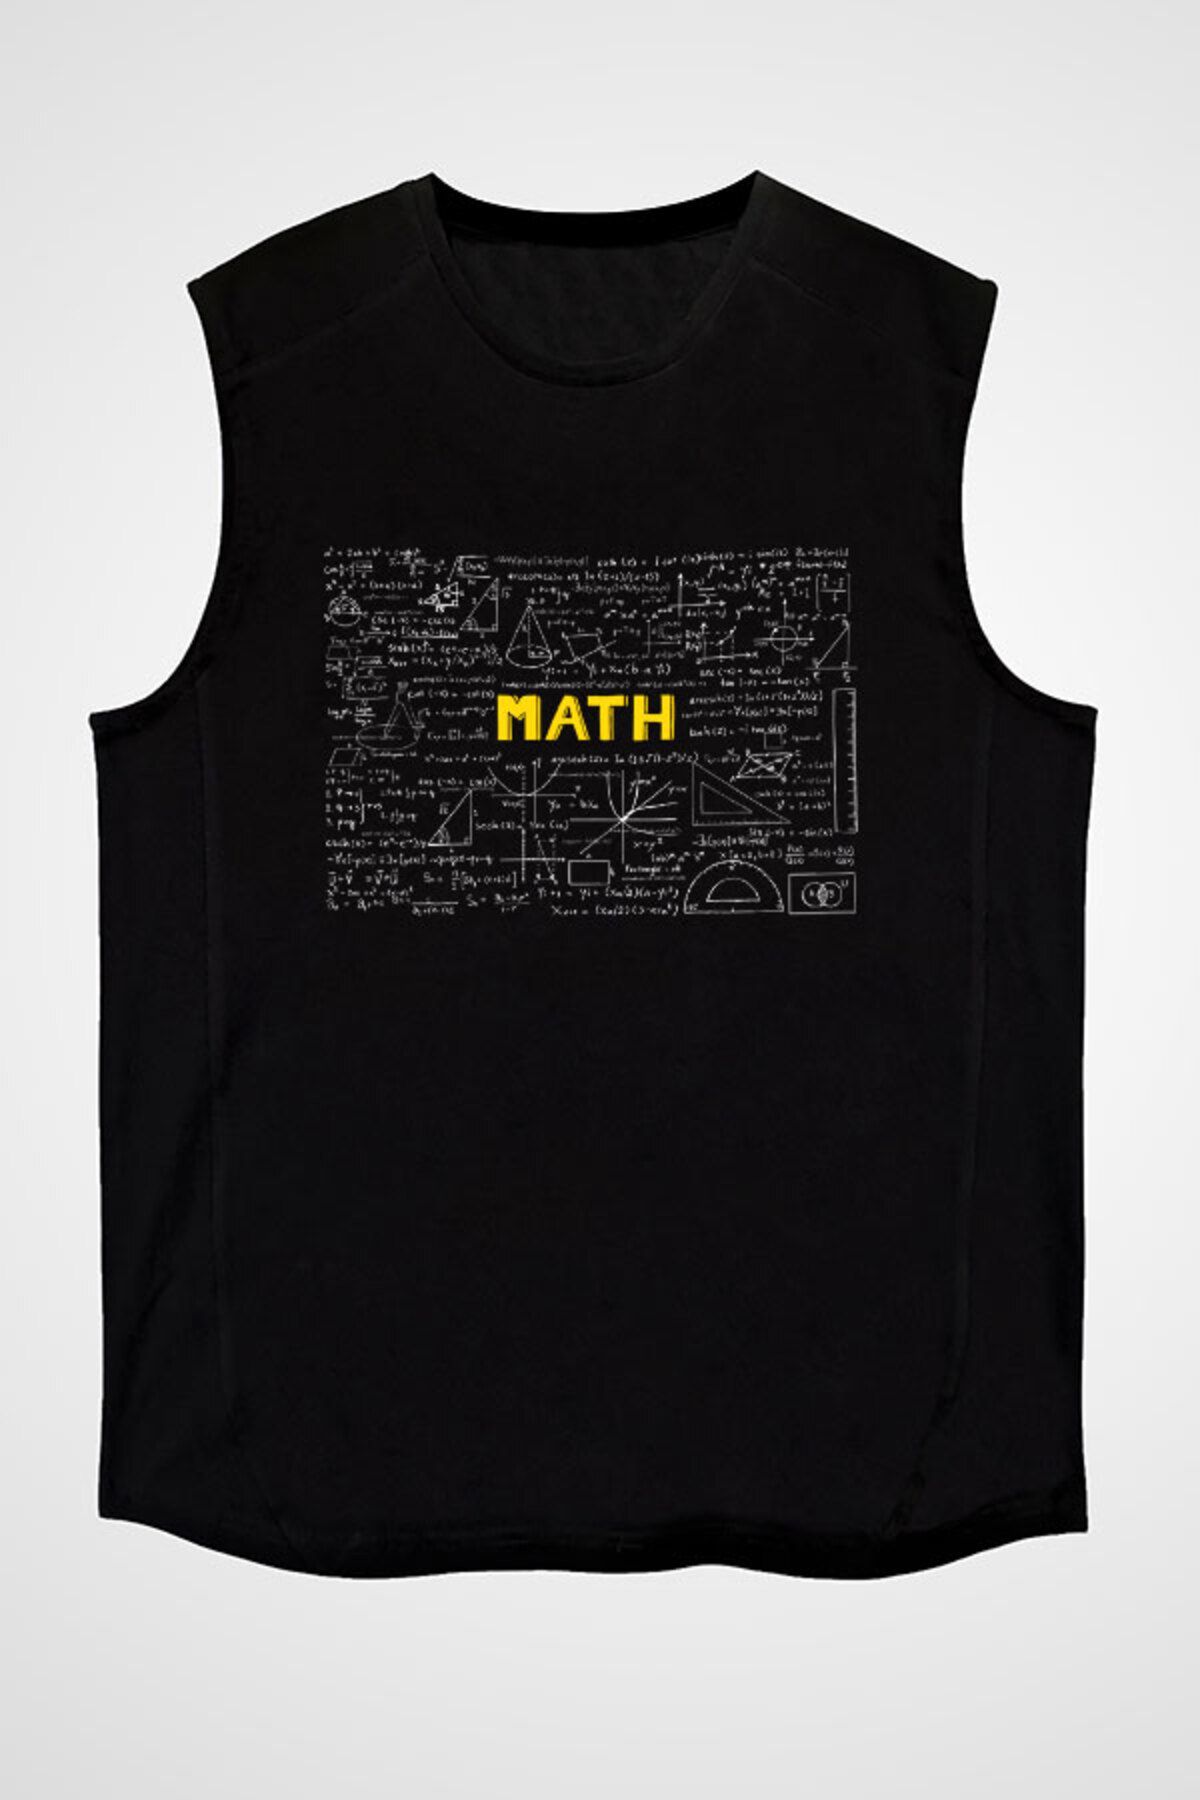 Darkhane Matematik Kara Tahta Formüller Siyah Unisex Kolsuz Tişört Kesik Kol T-Shirt